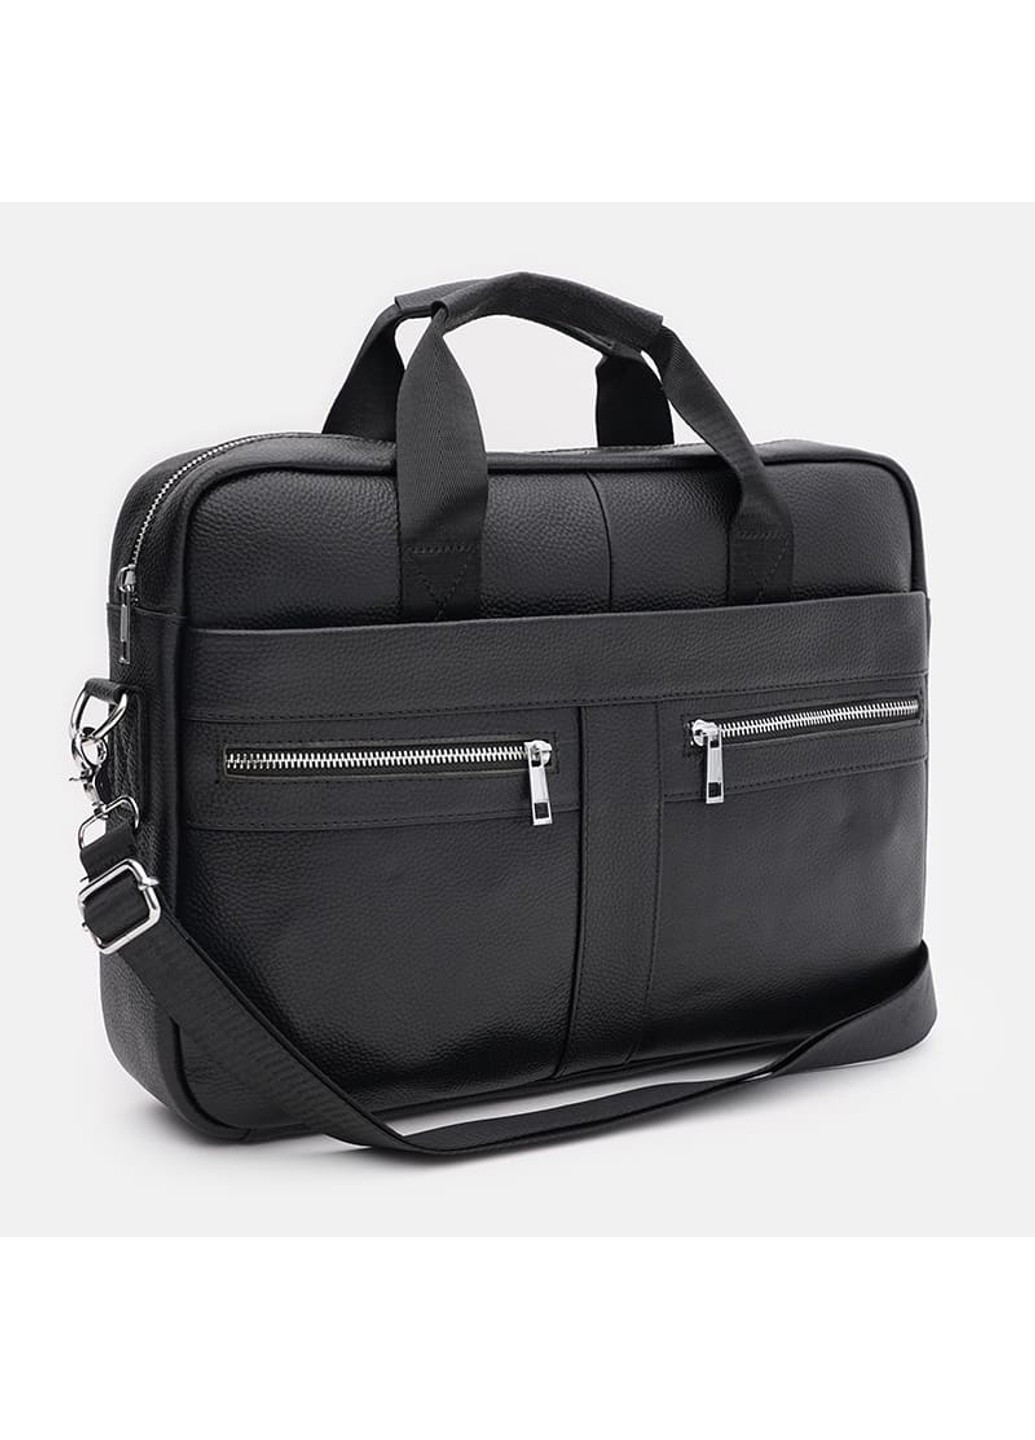 Мужская кожаная сумка - портфель K17067bl-black Keizer (274535898)